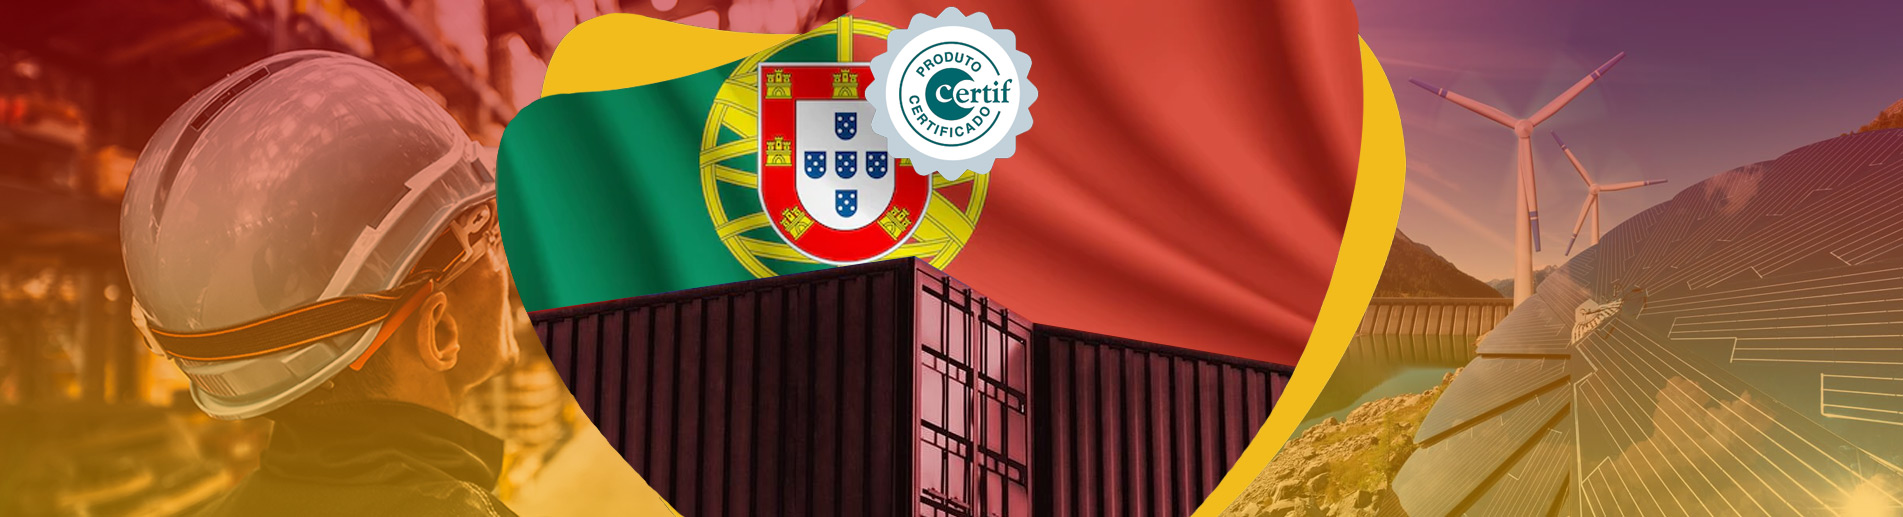 CERTIF Belgeleri Portekiz Sertifikasyon Örgütü